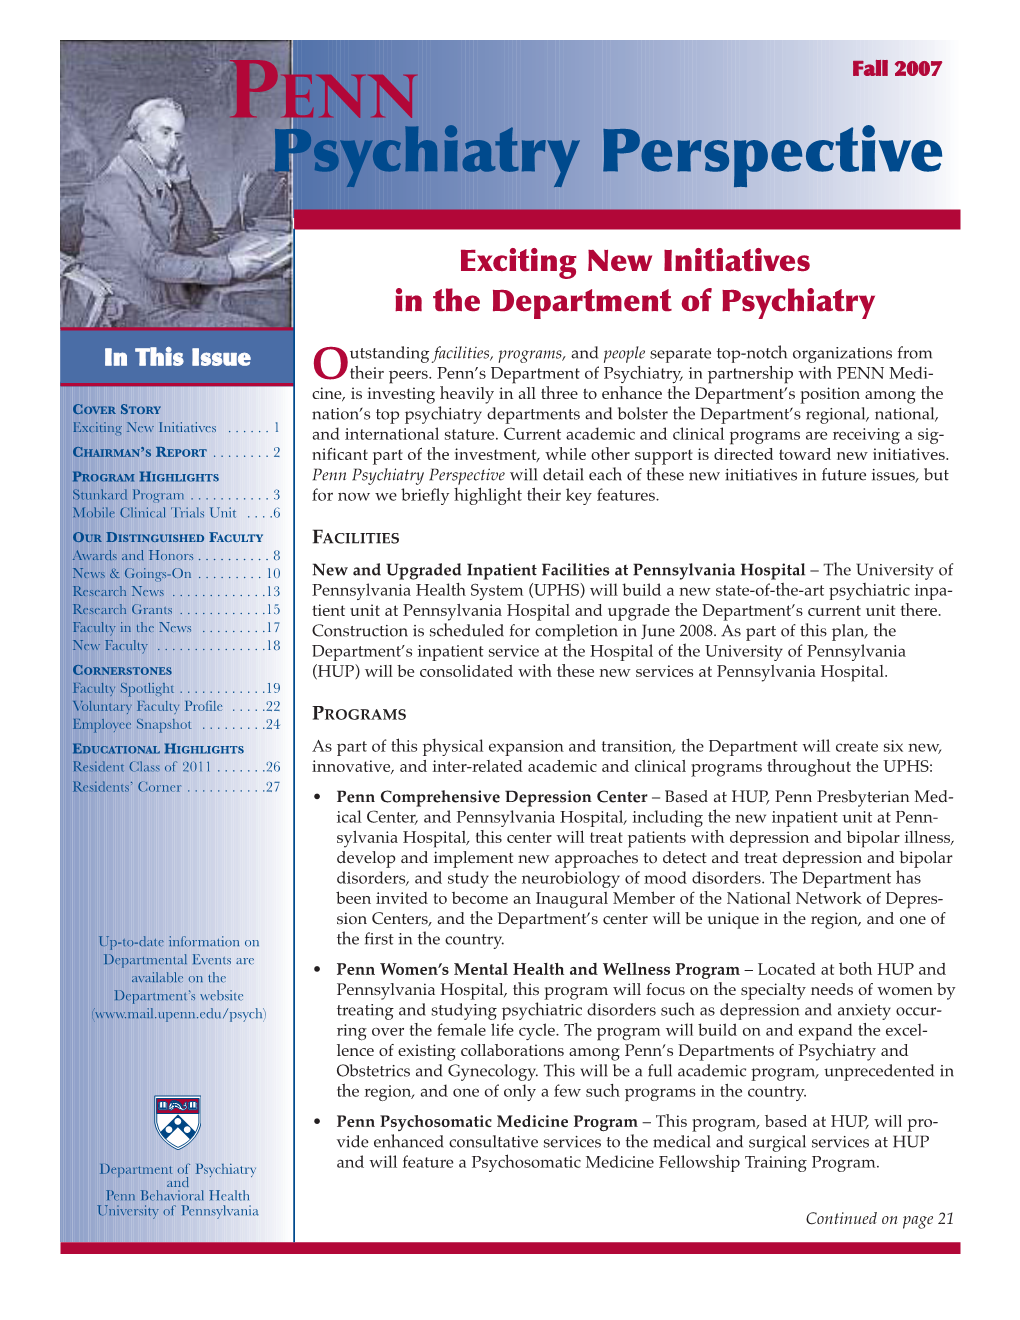 Penn Psychiatry Fall 2007